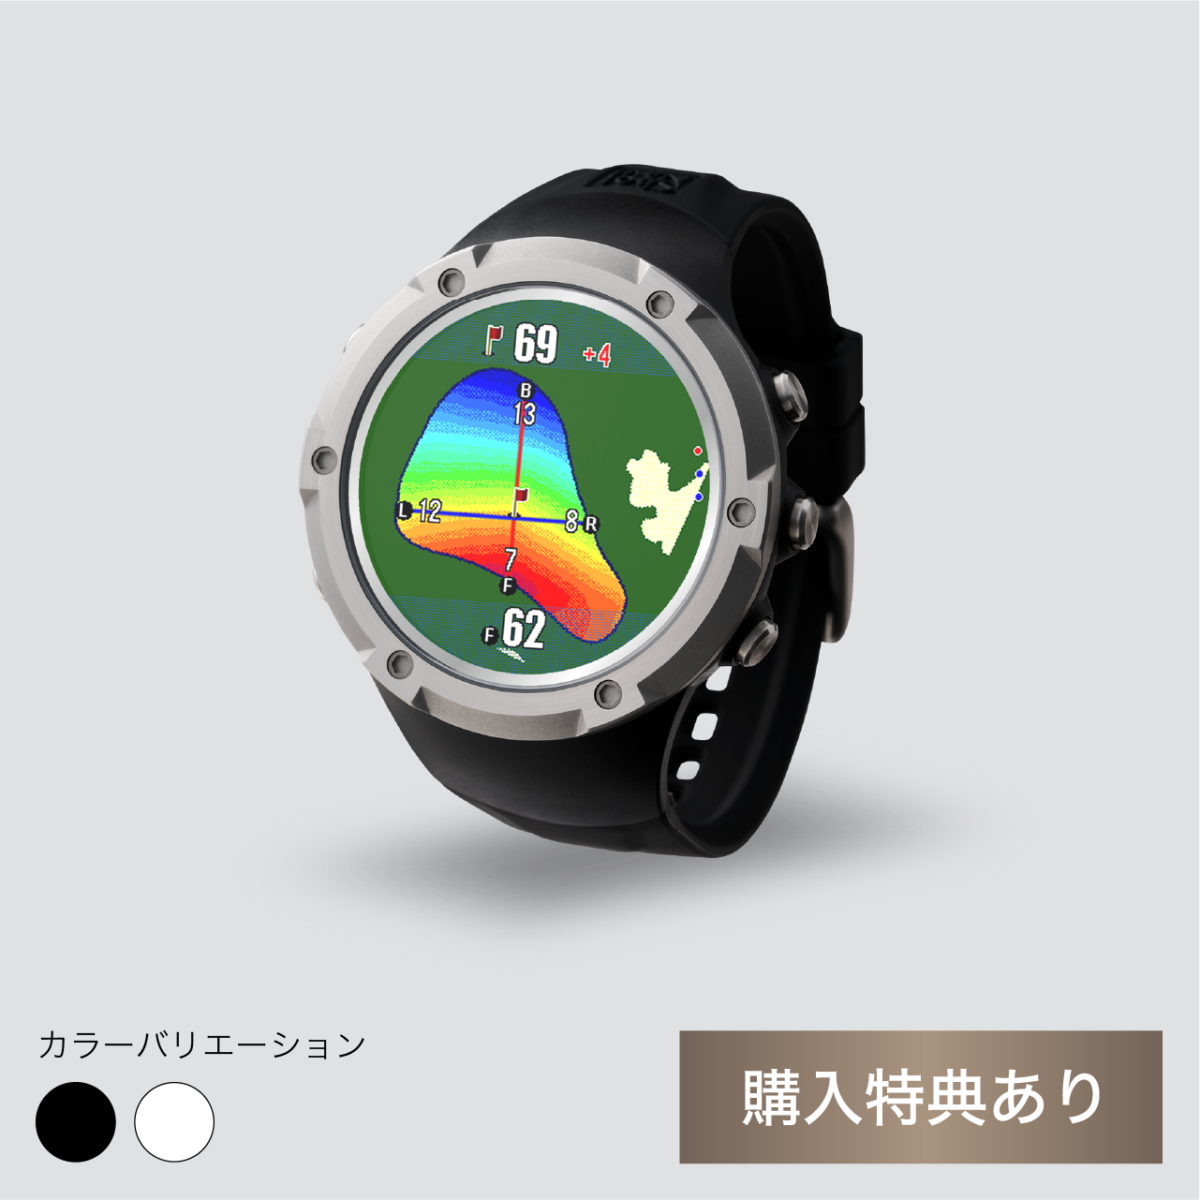 製品情報 – 【公式通販】ShotNavi ショットナビ / ゴルフ用距離計測機 